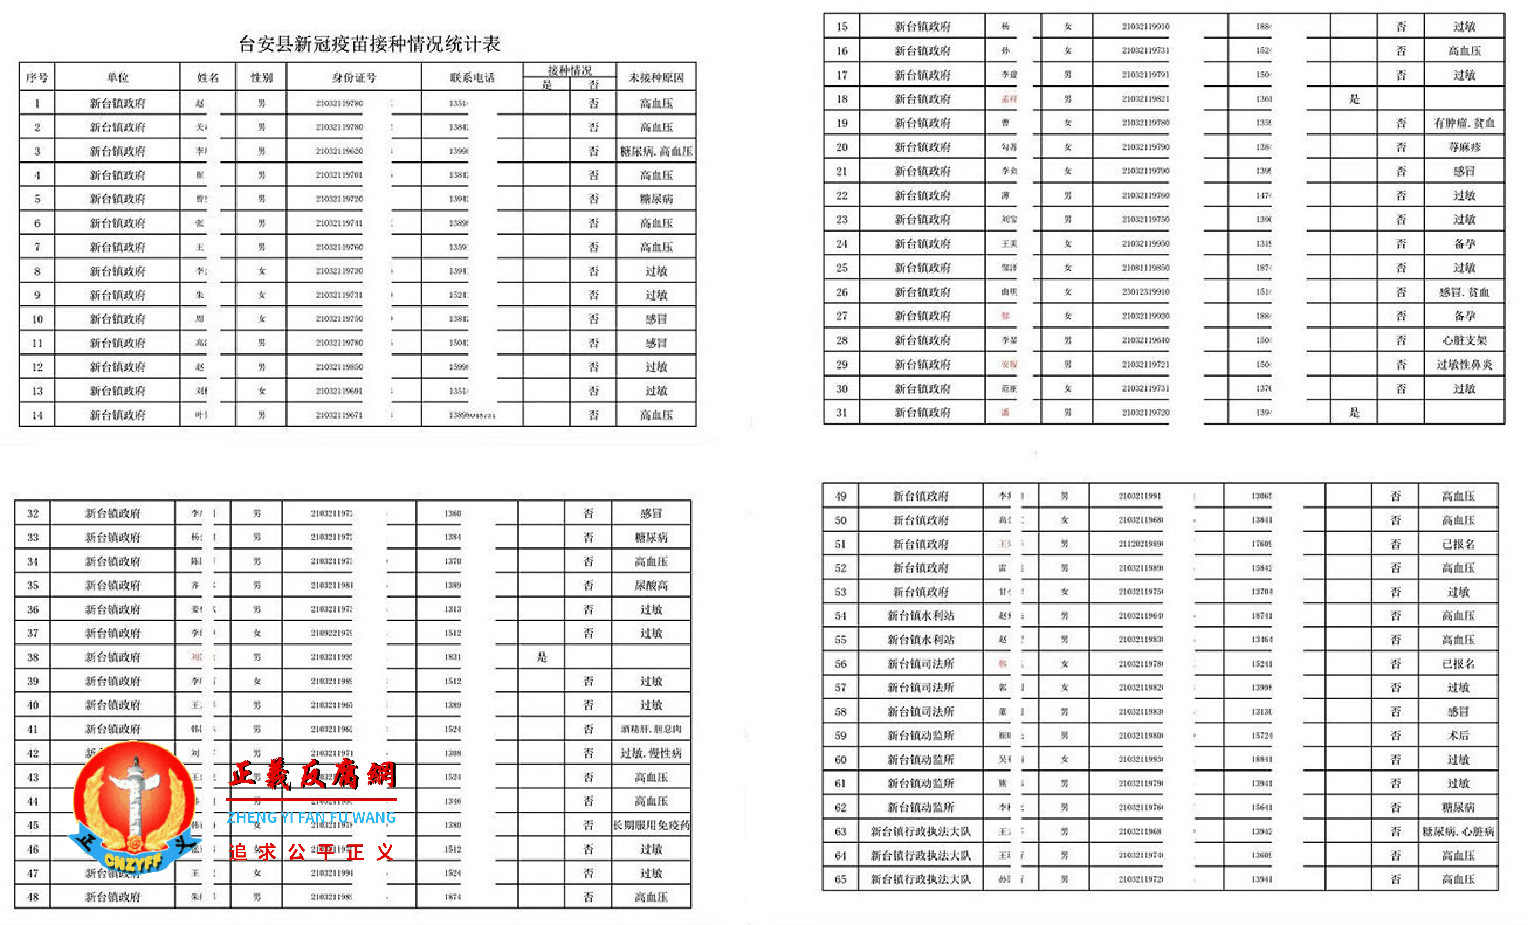 辽宁台安县新台镇官员接种情况统计表。.png